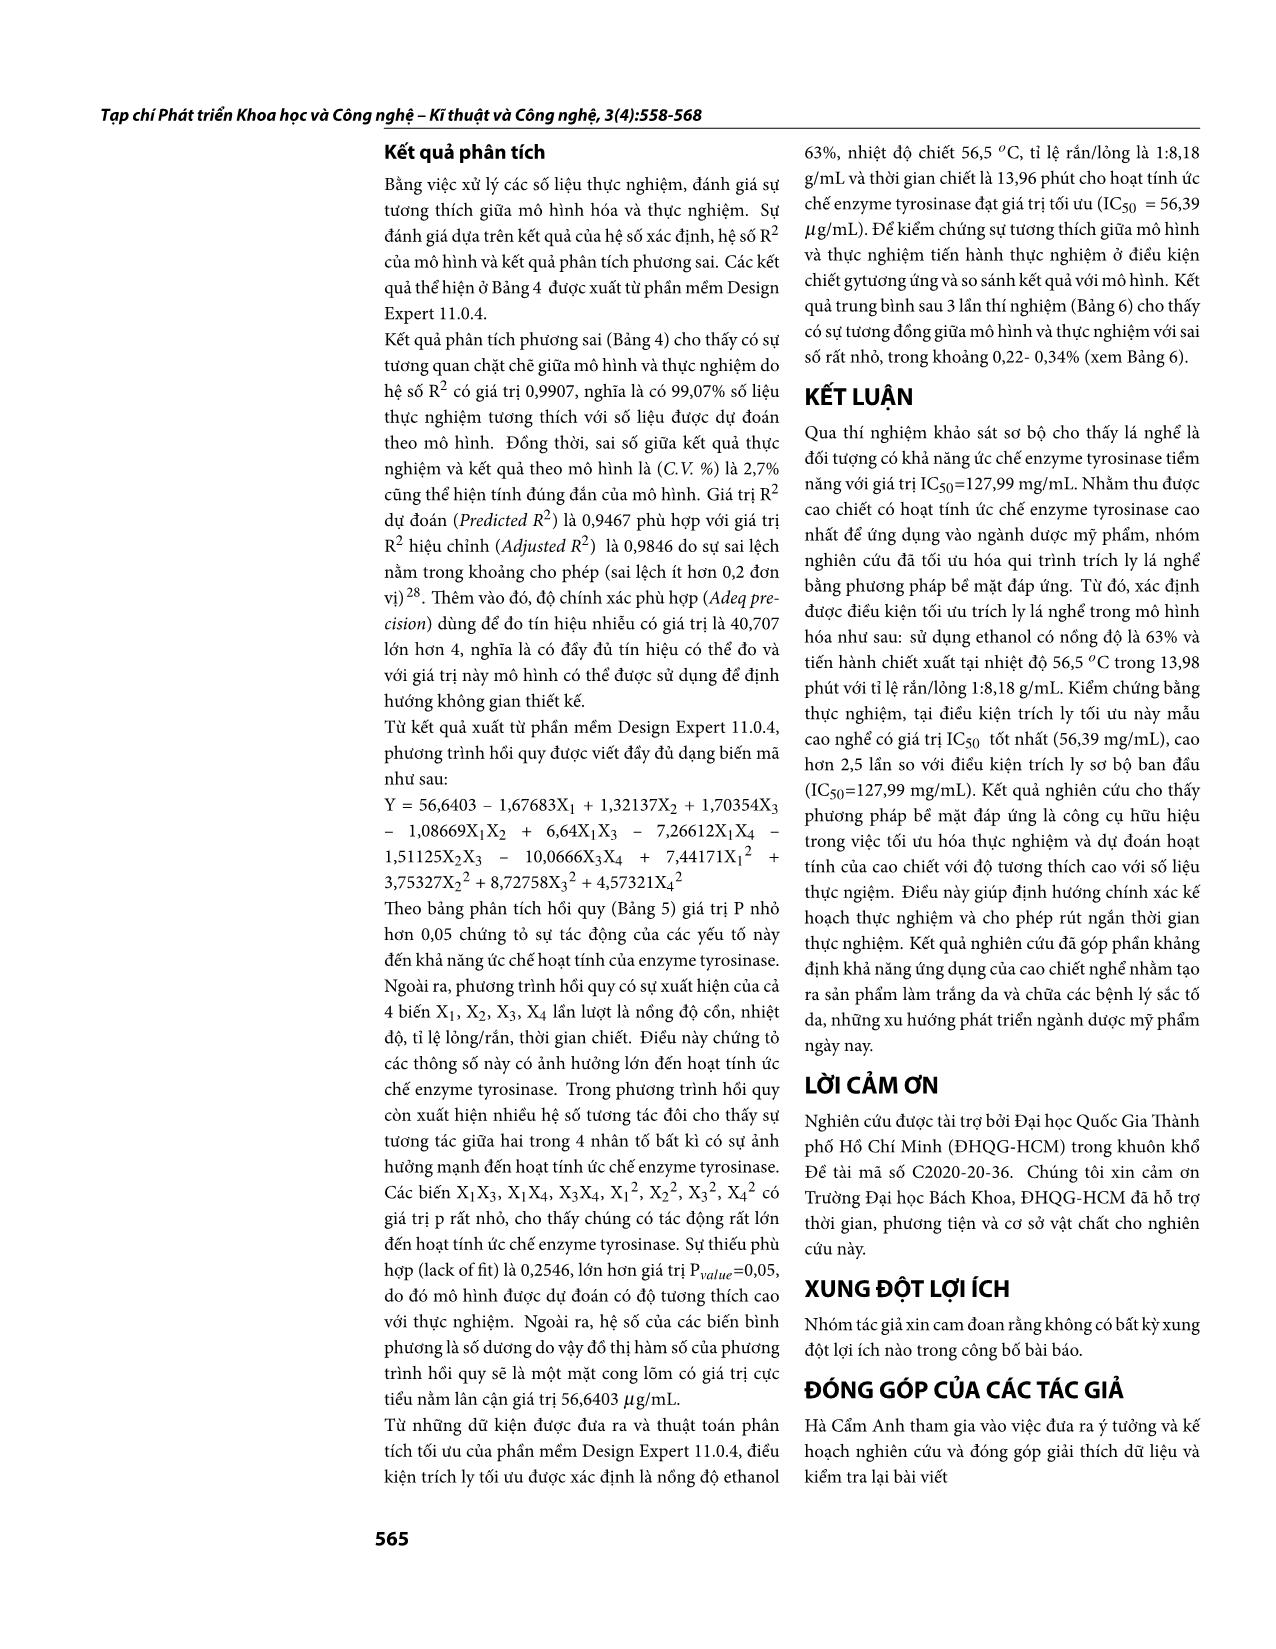 Tối ưu hóa trích ly cao chiết có hoạt tính ức chế enzyme tyrosinase từ lá Persicaria pulchra (Bl.) Soják bằng phương pháp bề mặt đáp ứng trang 8